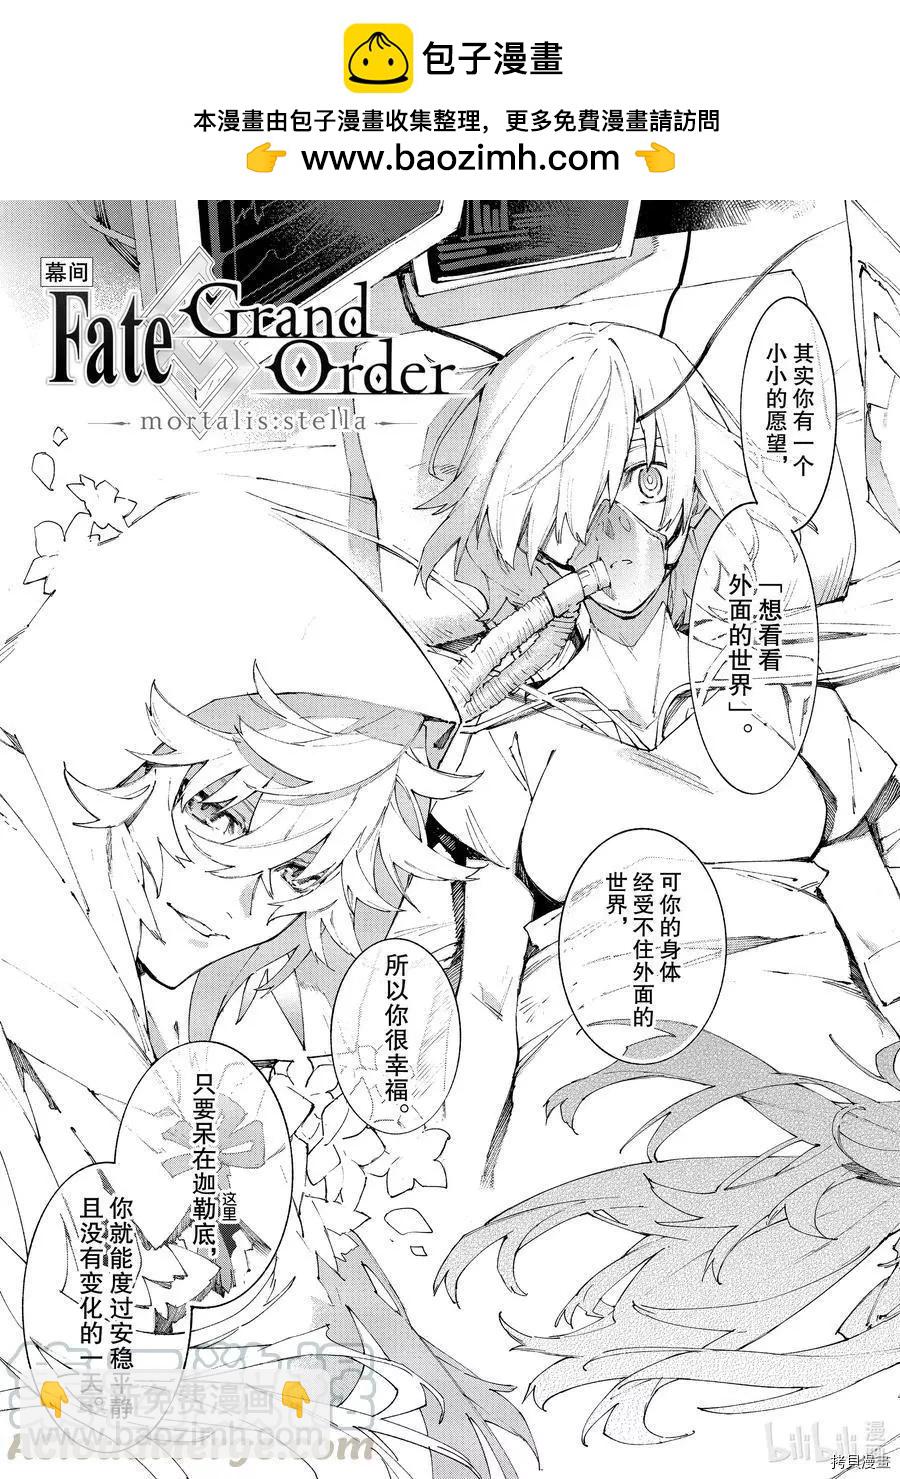 Fate Grand Order-mortalis:stella- - 第24話 - 2